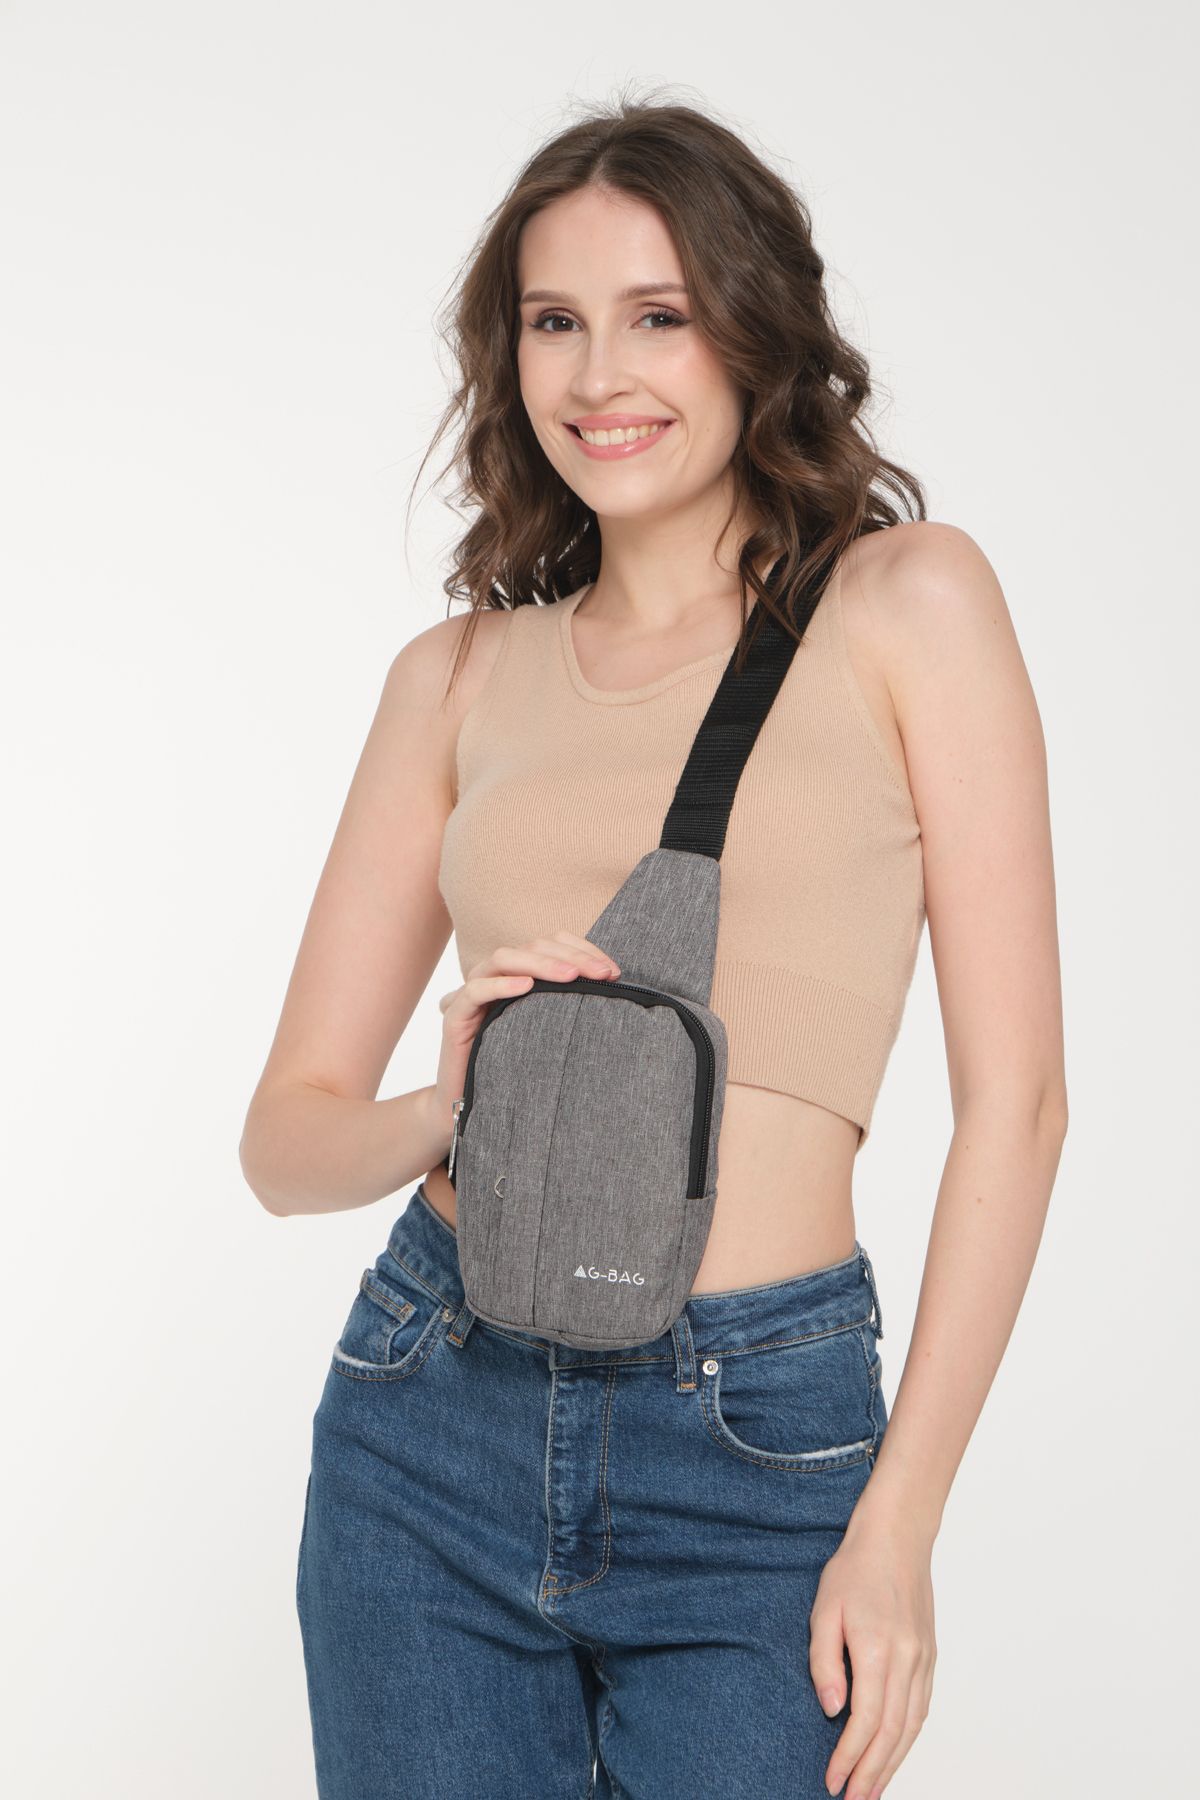 GBAG Unisex Çapraz Askılı Ortadan Fermuarlı Vücut Çantası Body Bag Omuz Askılı Çanta